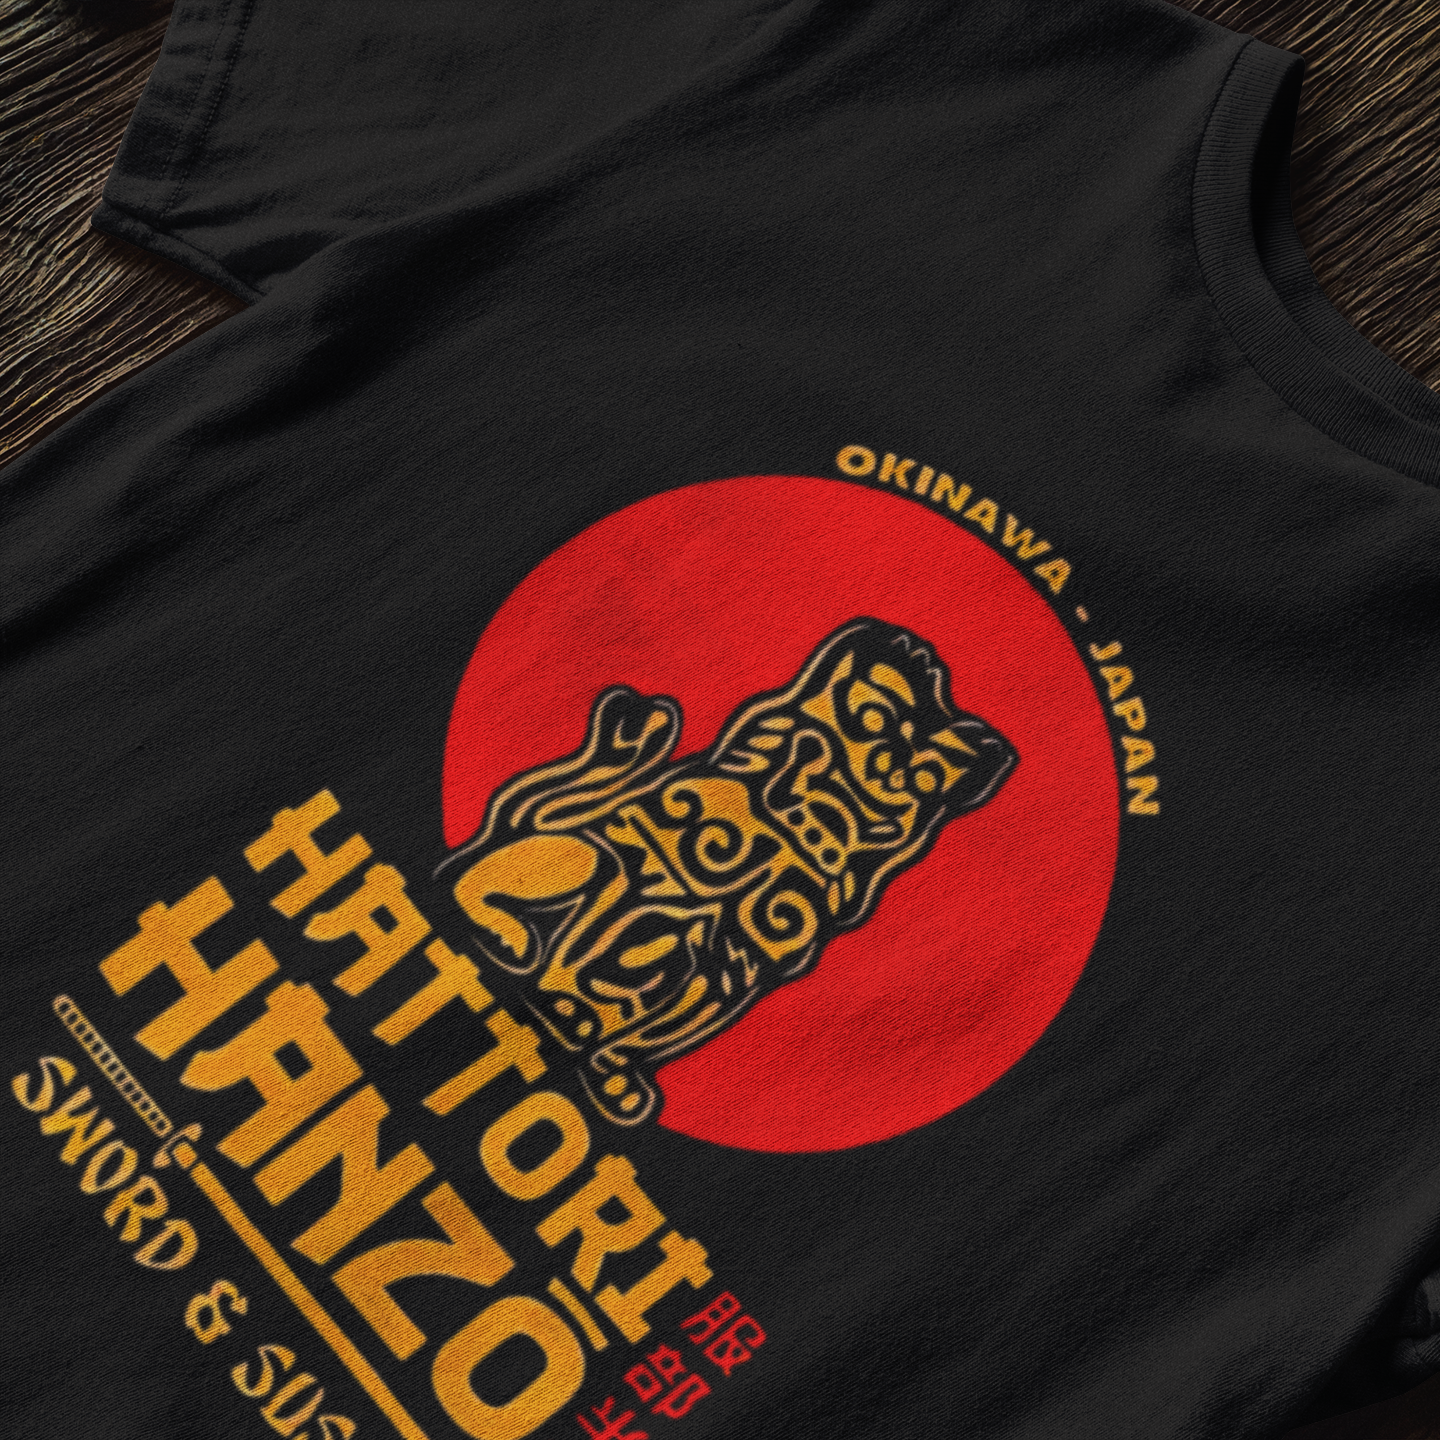 Hattori Hanzo Kill Bill - T-Shirt